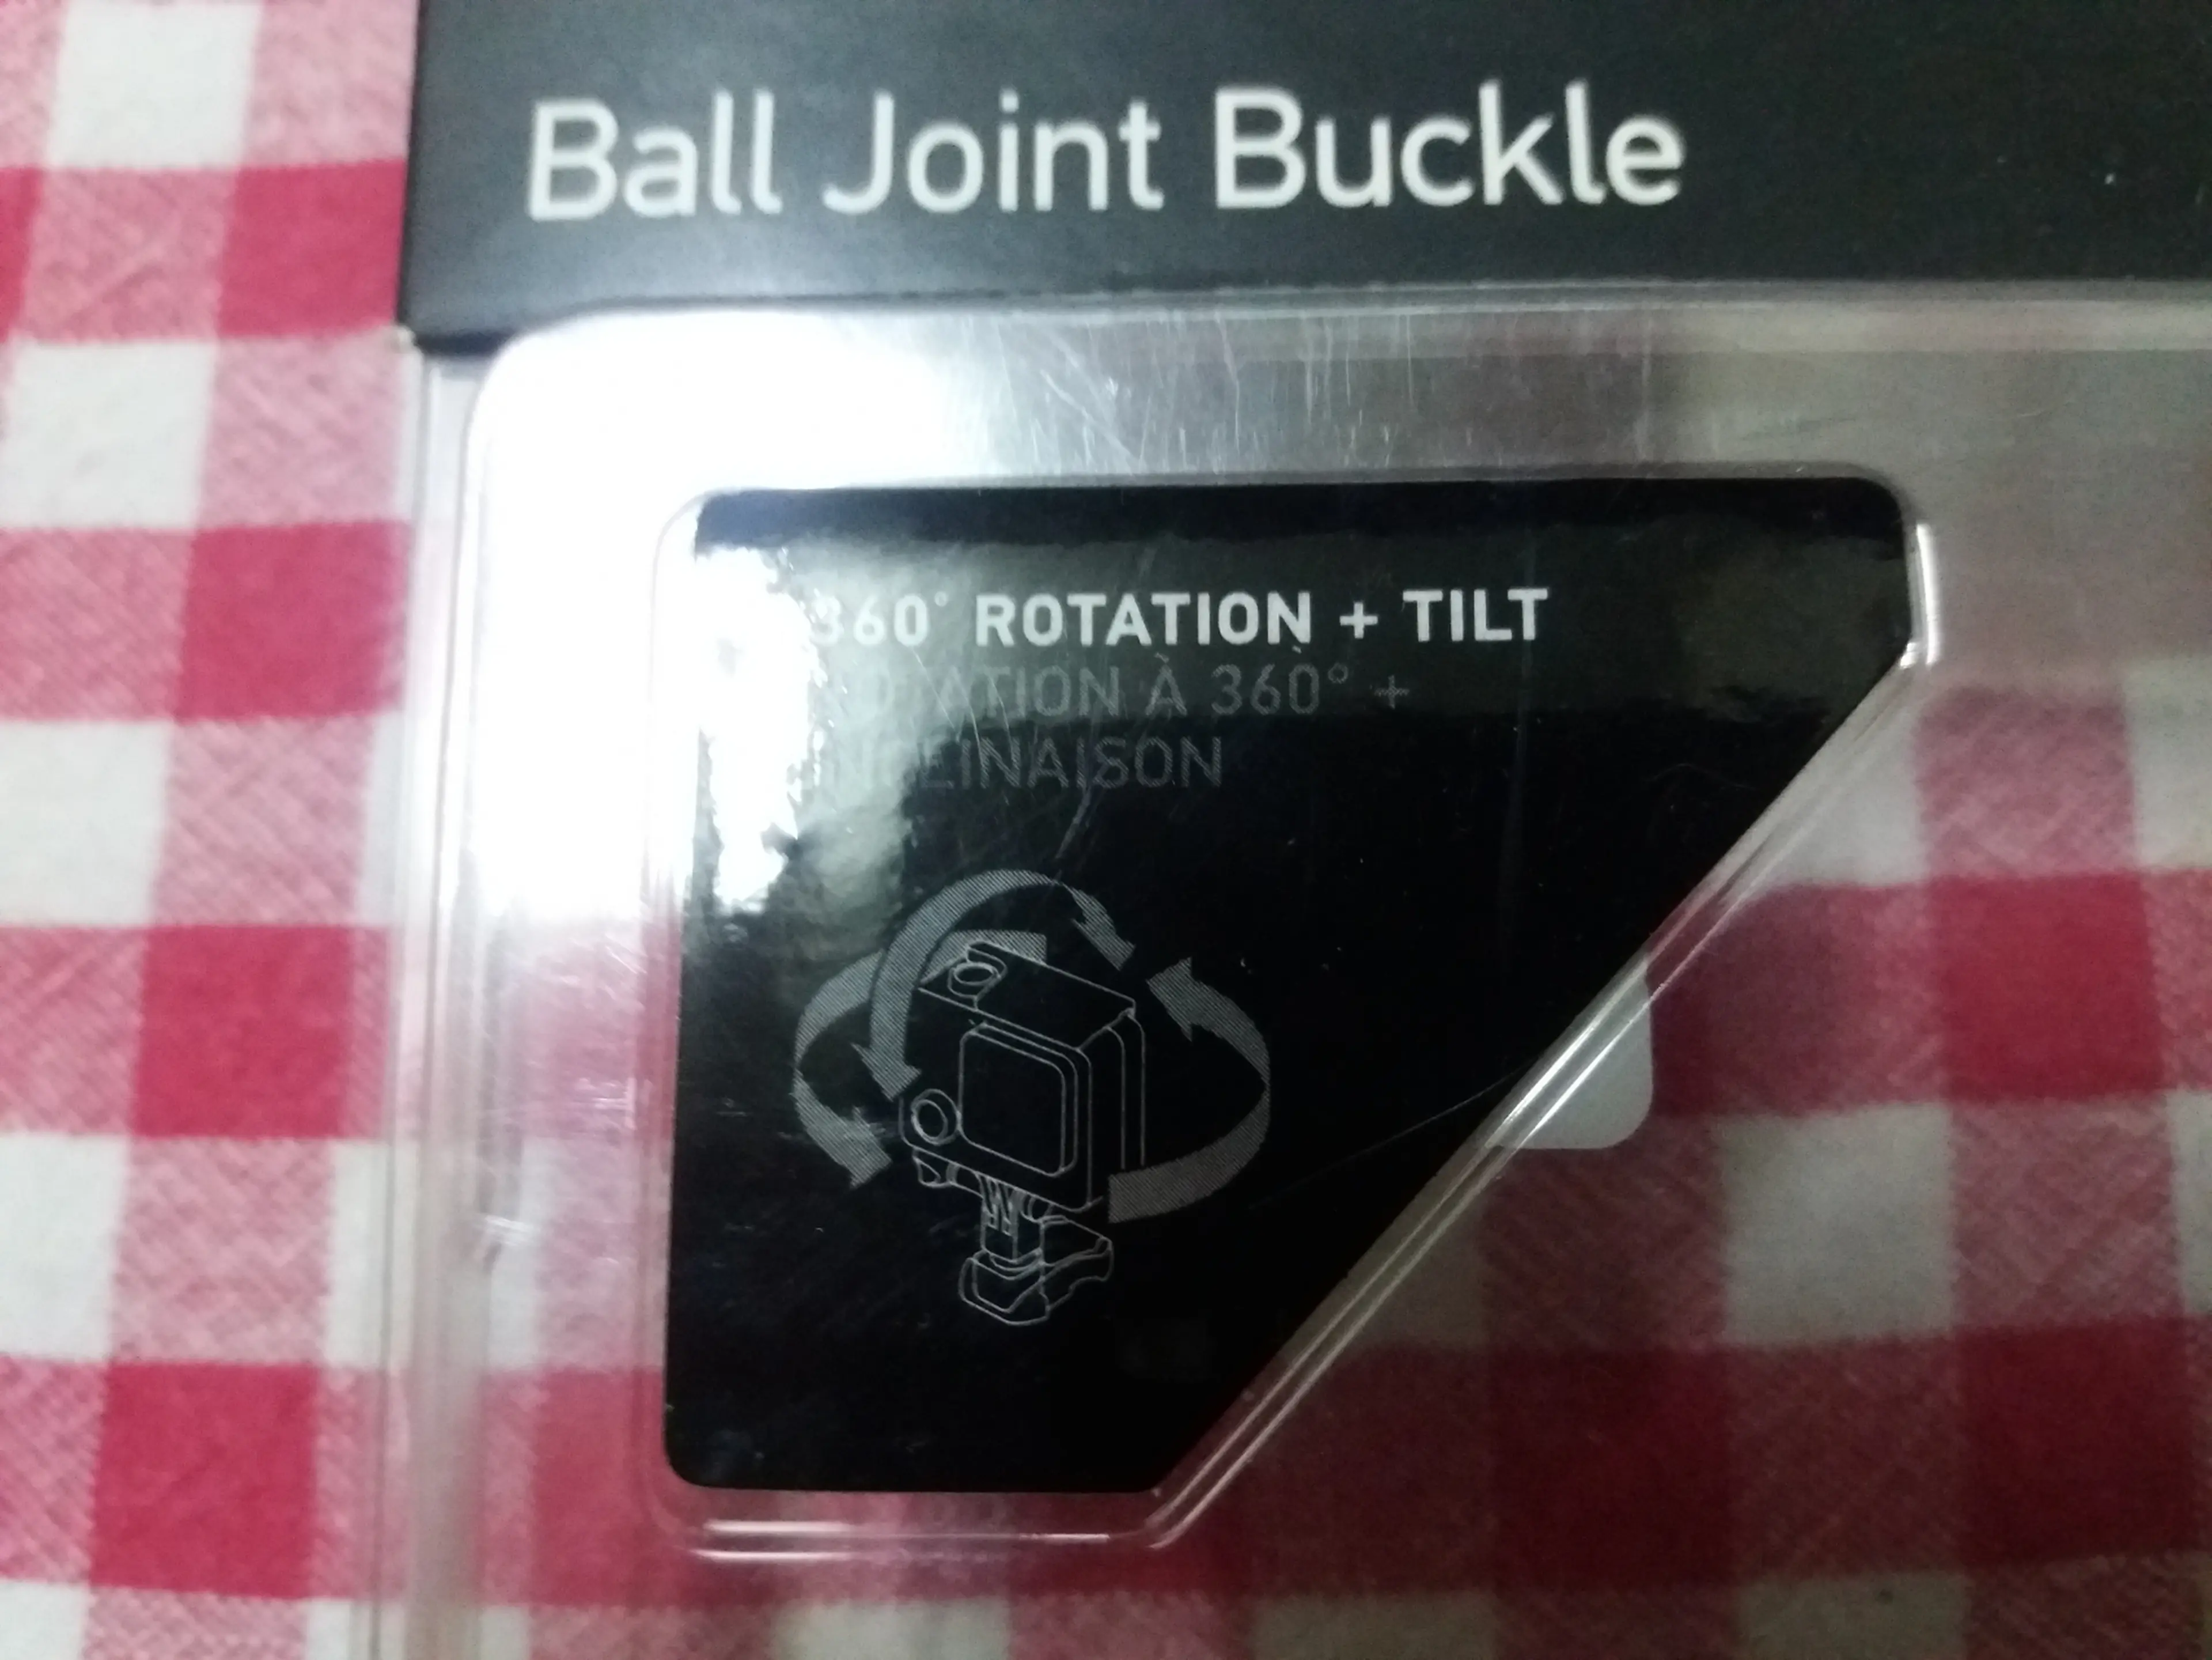 3. GoPro - Ball Joint Buckle - prindere rapida cu articulatie pivotanta rotire 360°